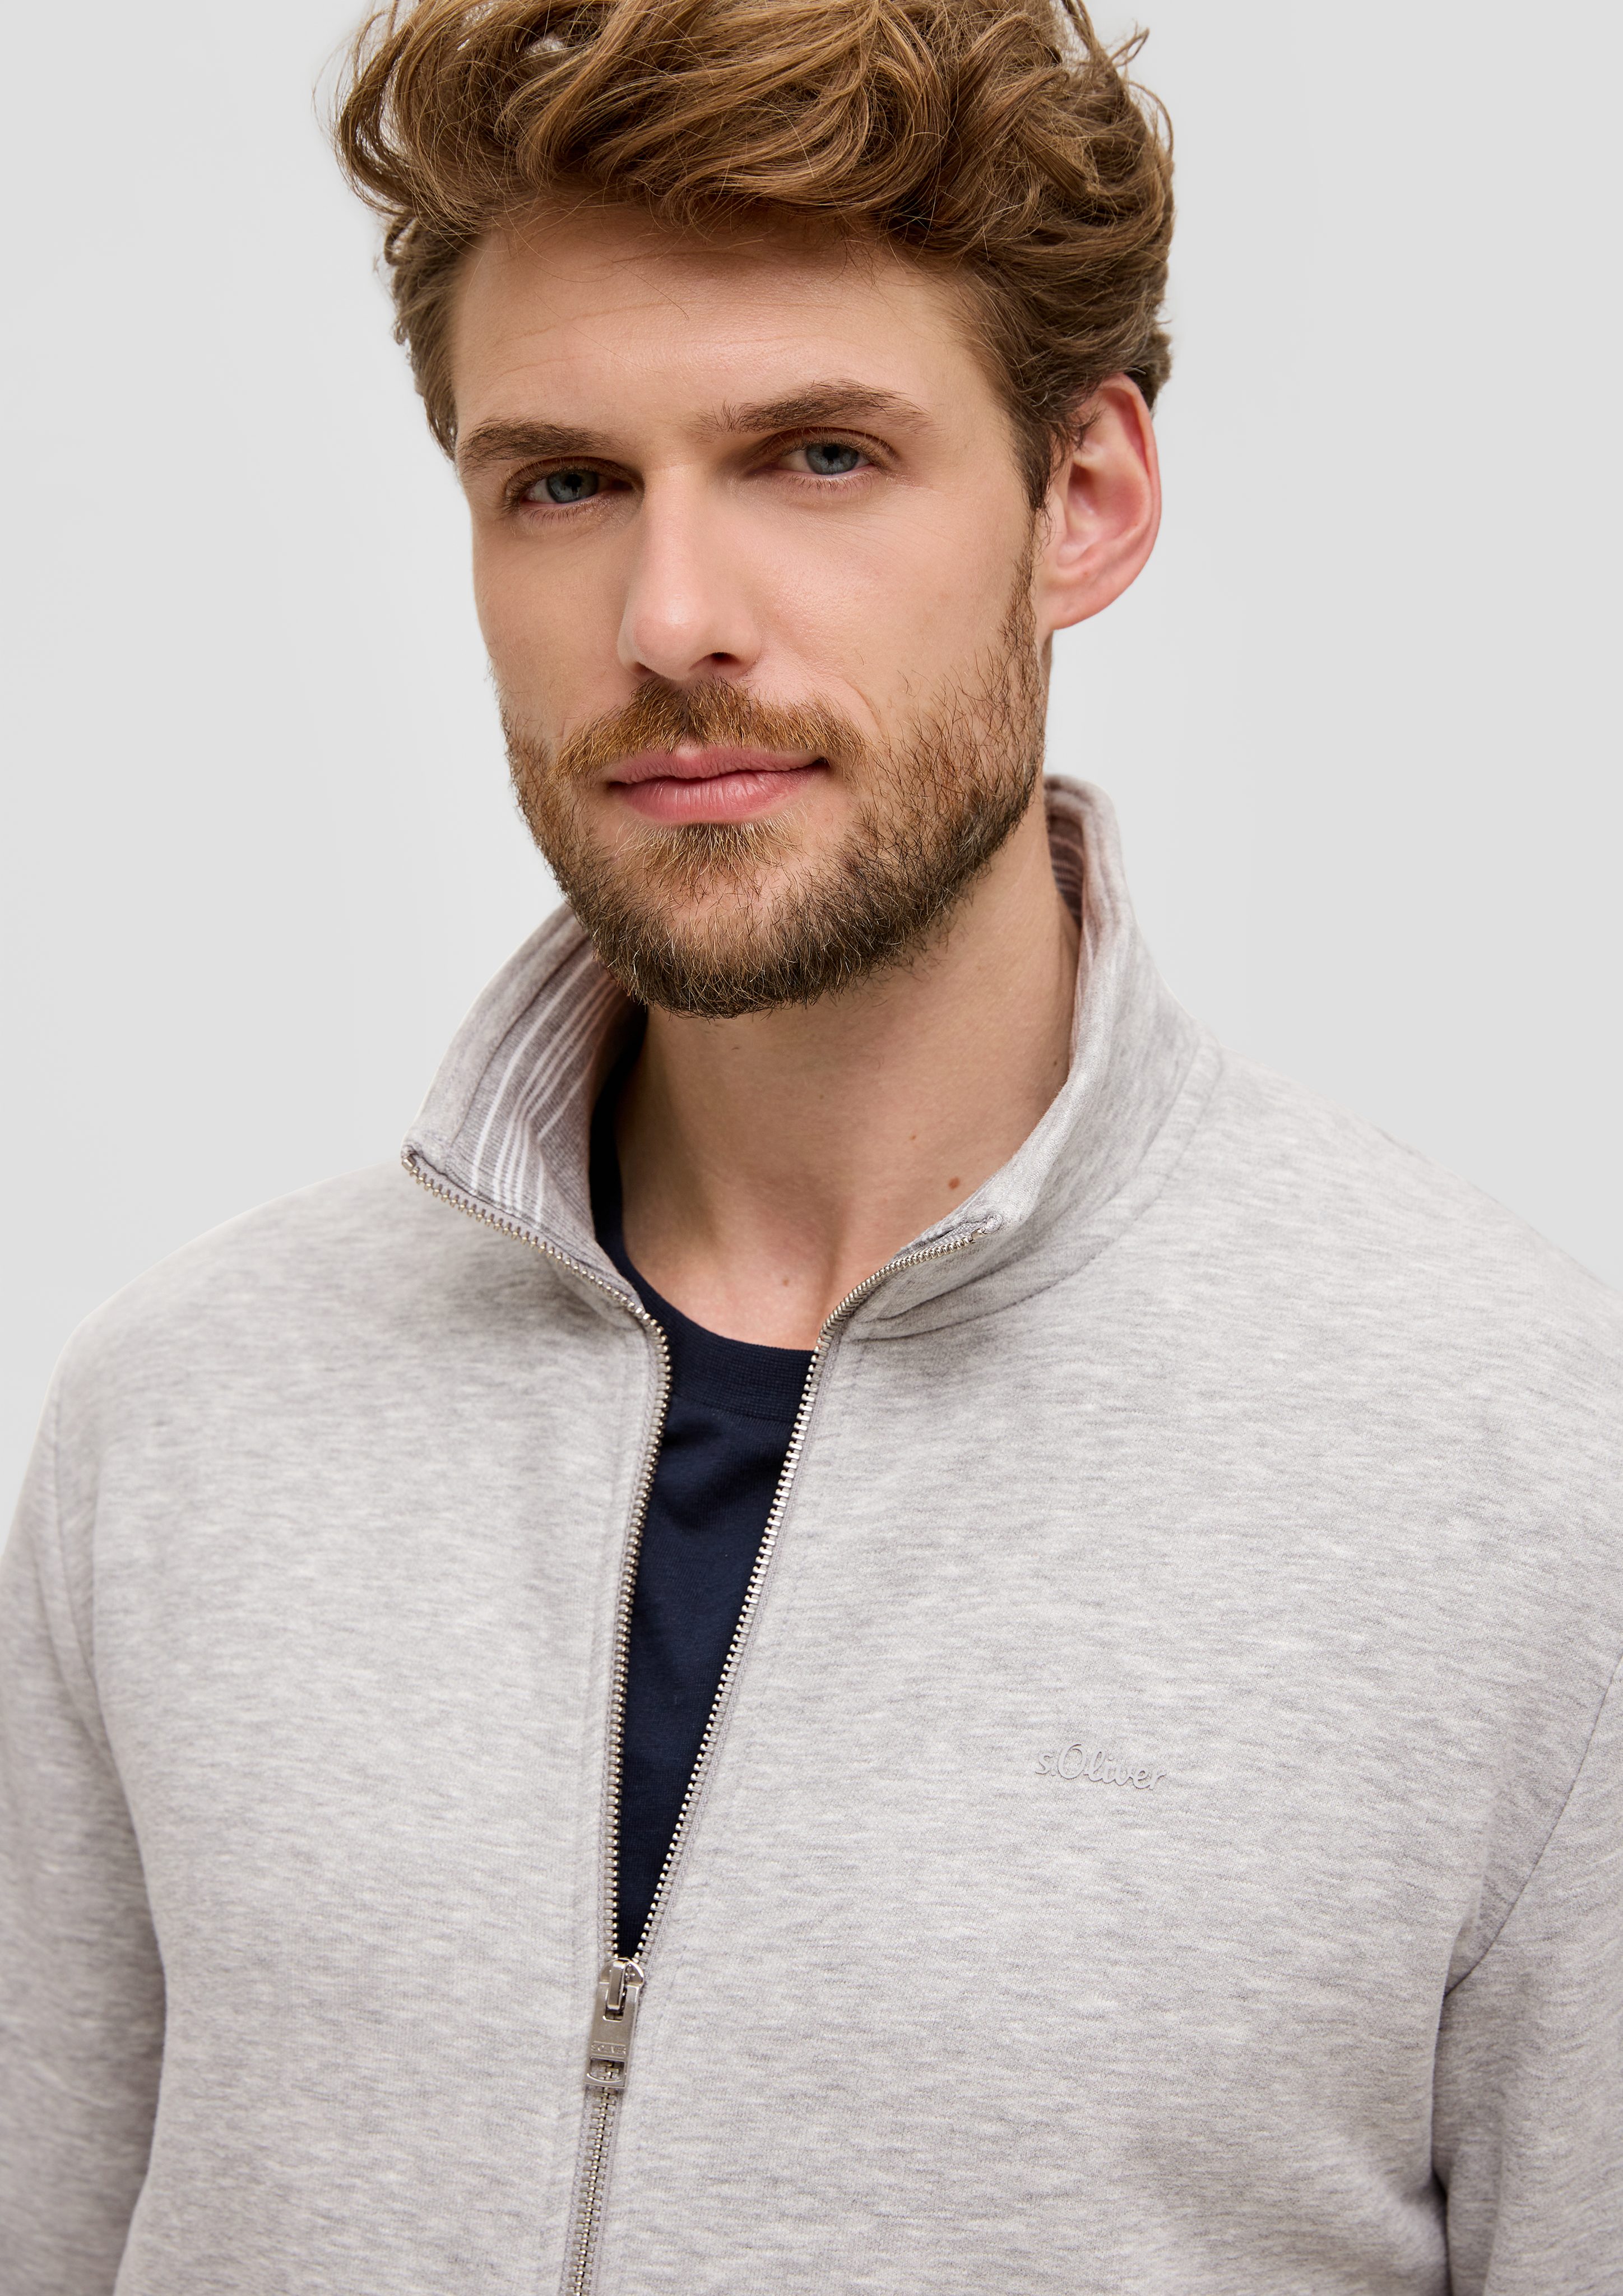 s.Oliver Allwetterjacke Sweatshirt-Jacke mit Streifen-Detail Stehkragen Logo, grau meliert